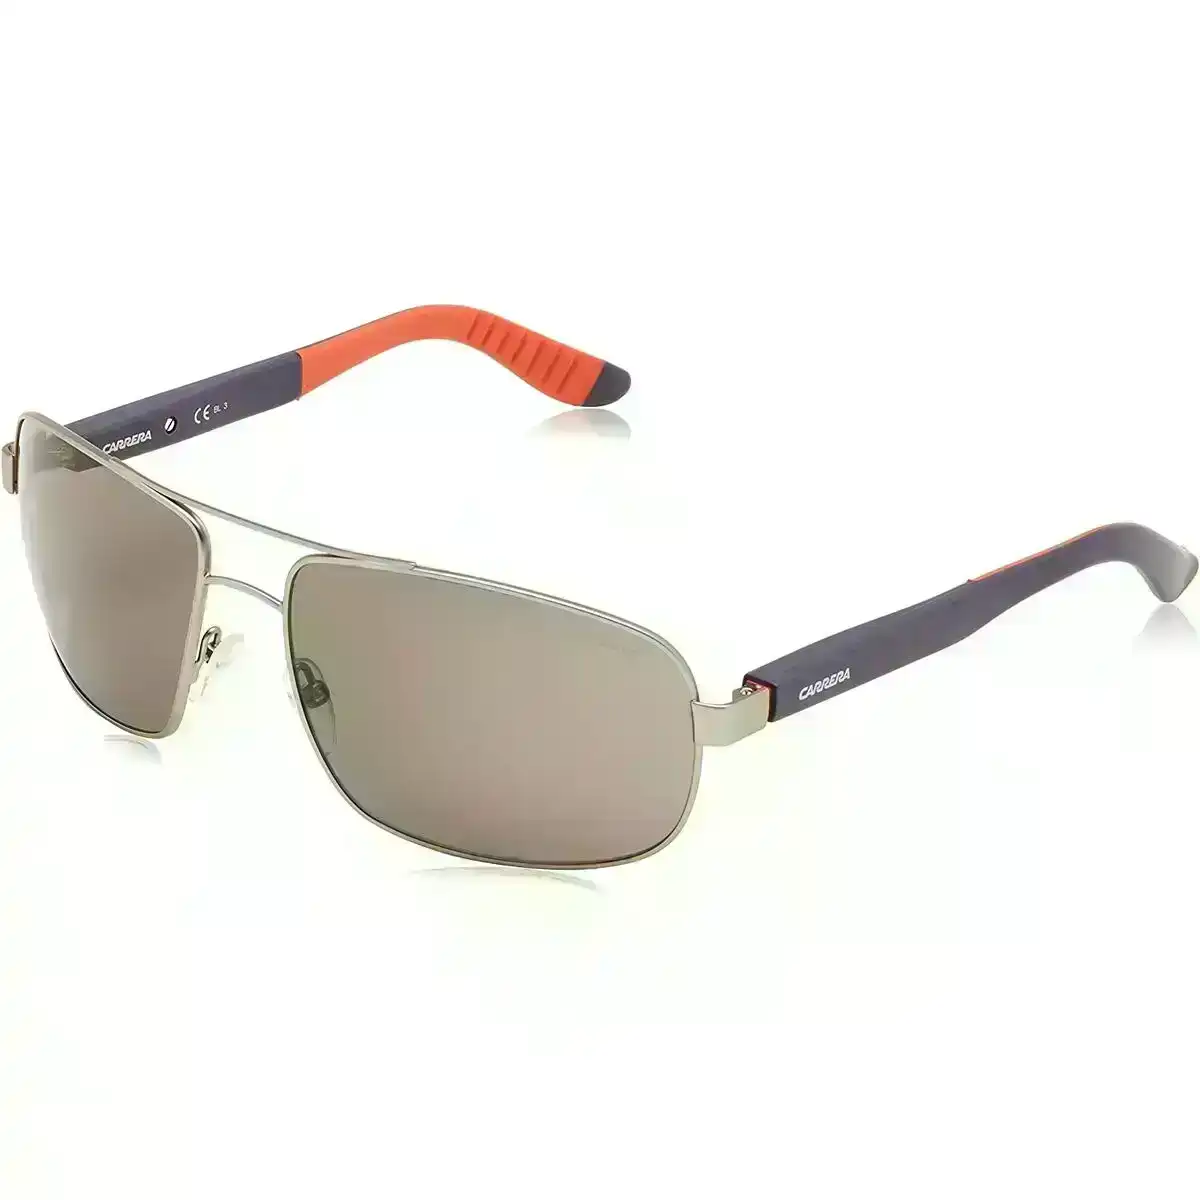 Men's Sunglasses Carrera Carrera 8003